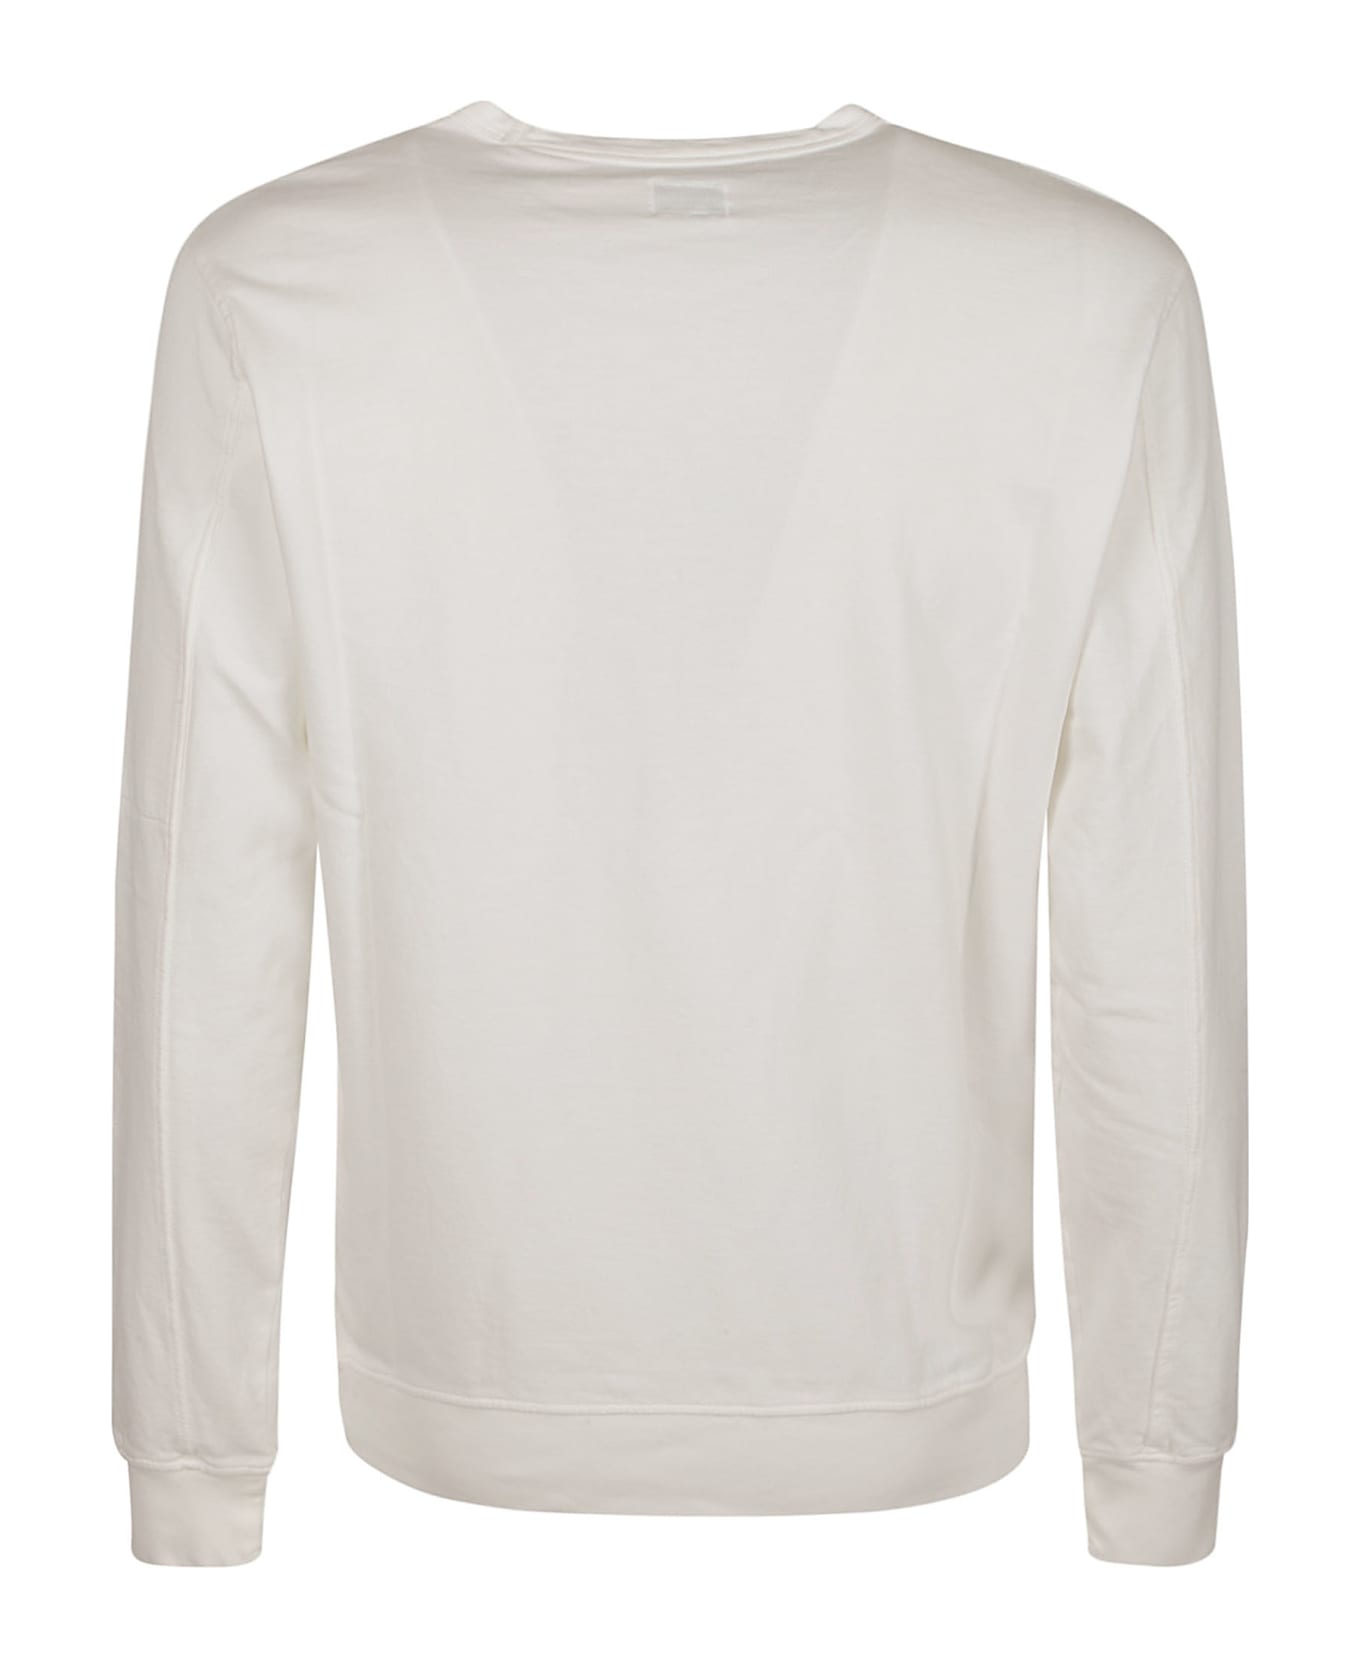 C.P. Company Light Fleece Sweatshirt - GAUZEWHITE フリース